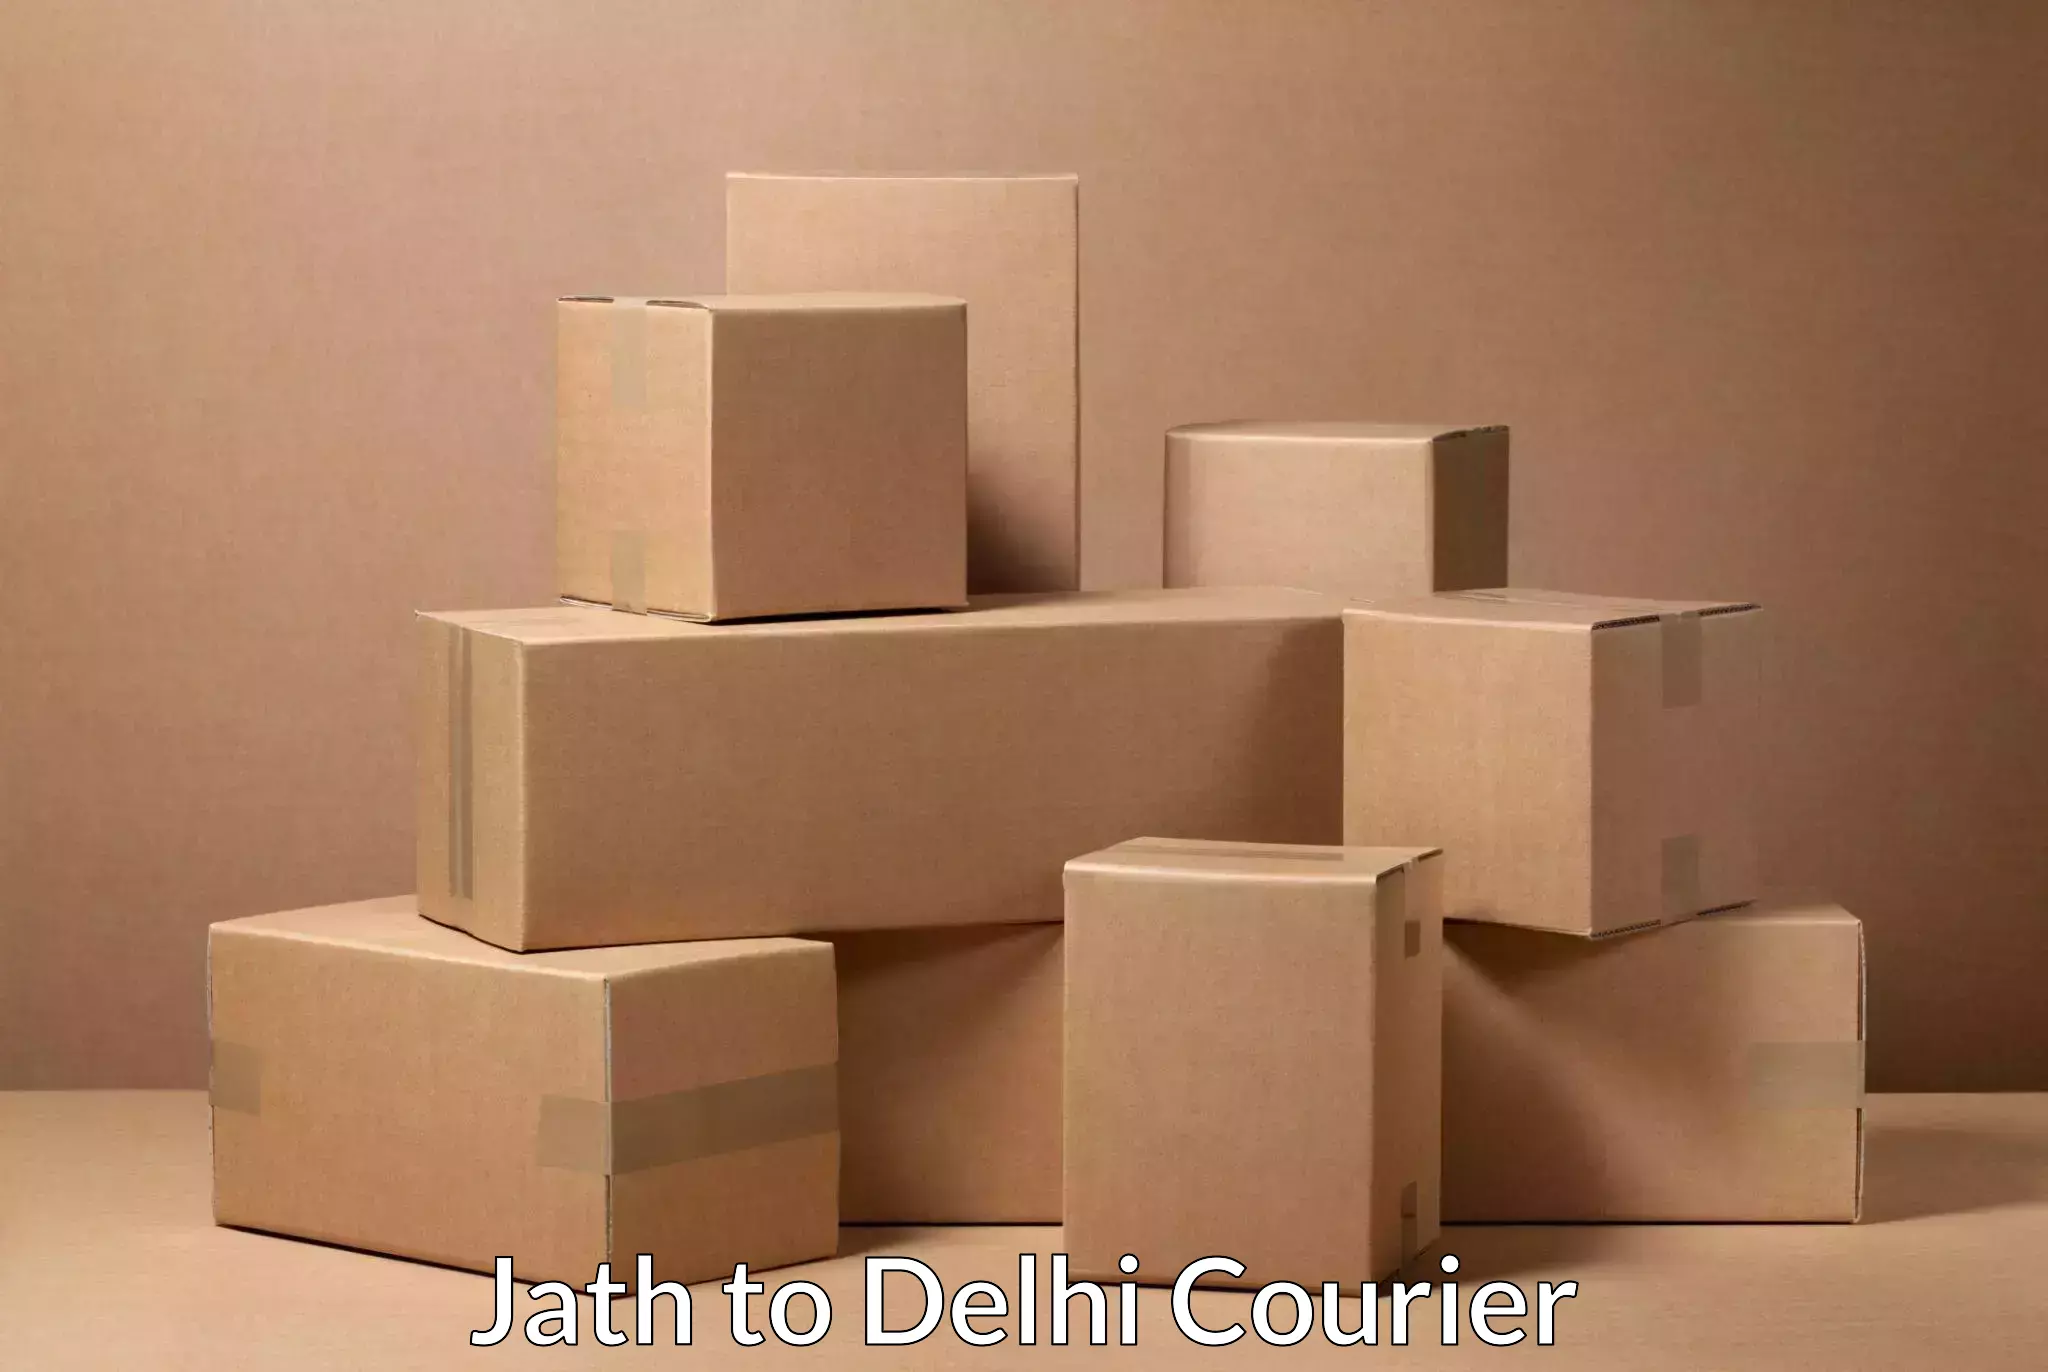 Flexible parcel services Jath to Delhi